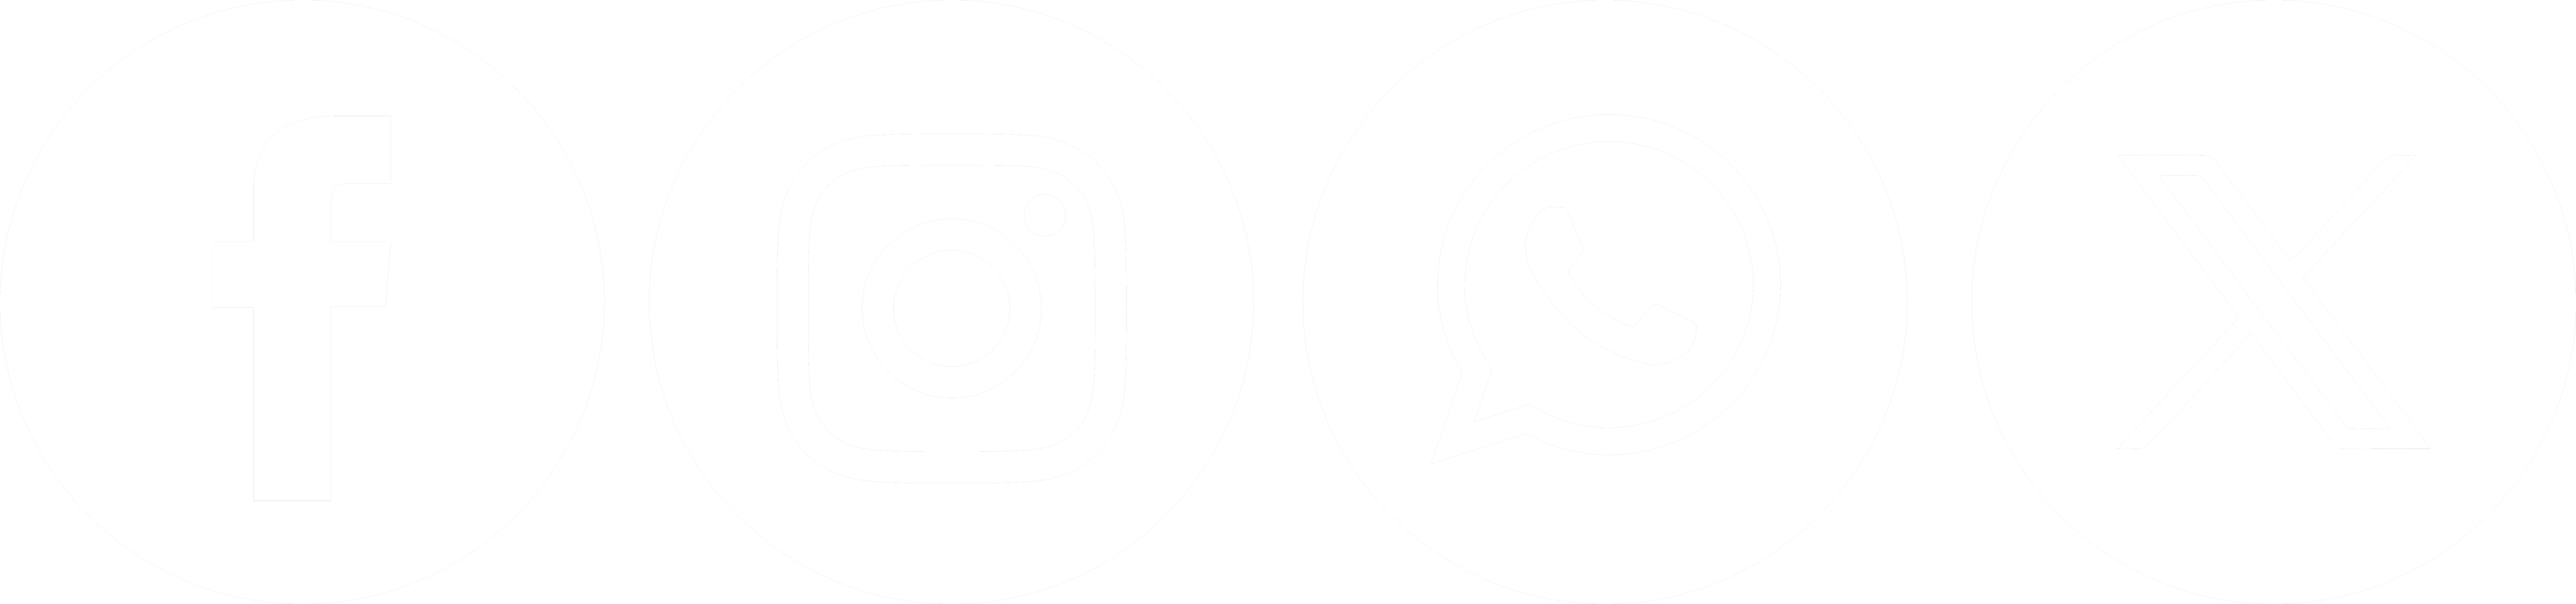 Logos redes sociales